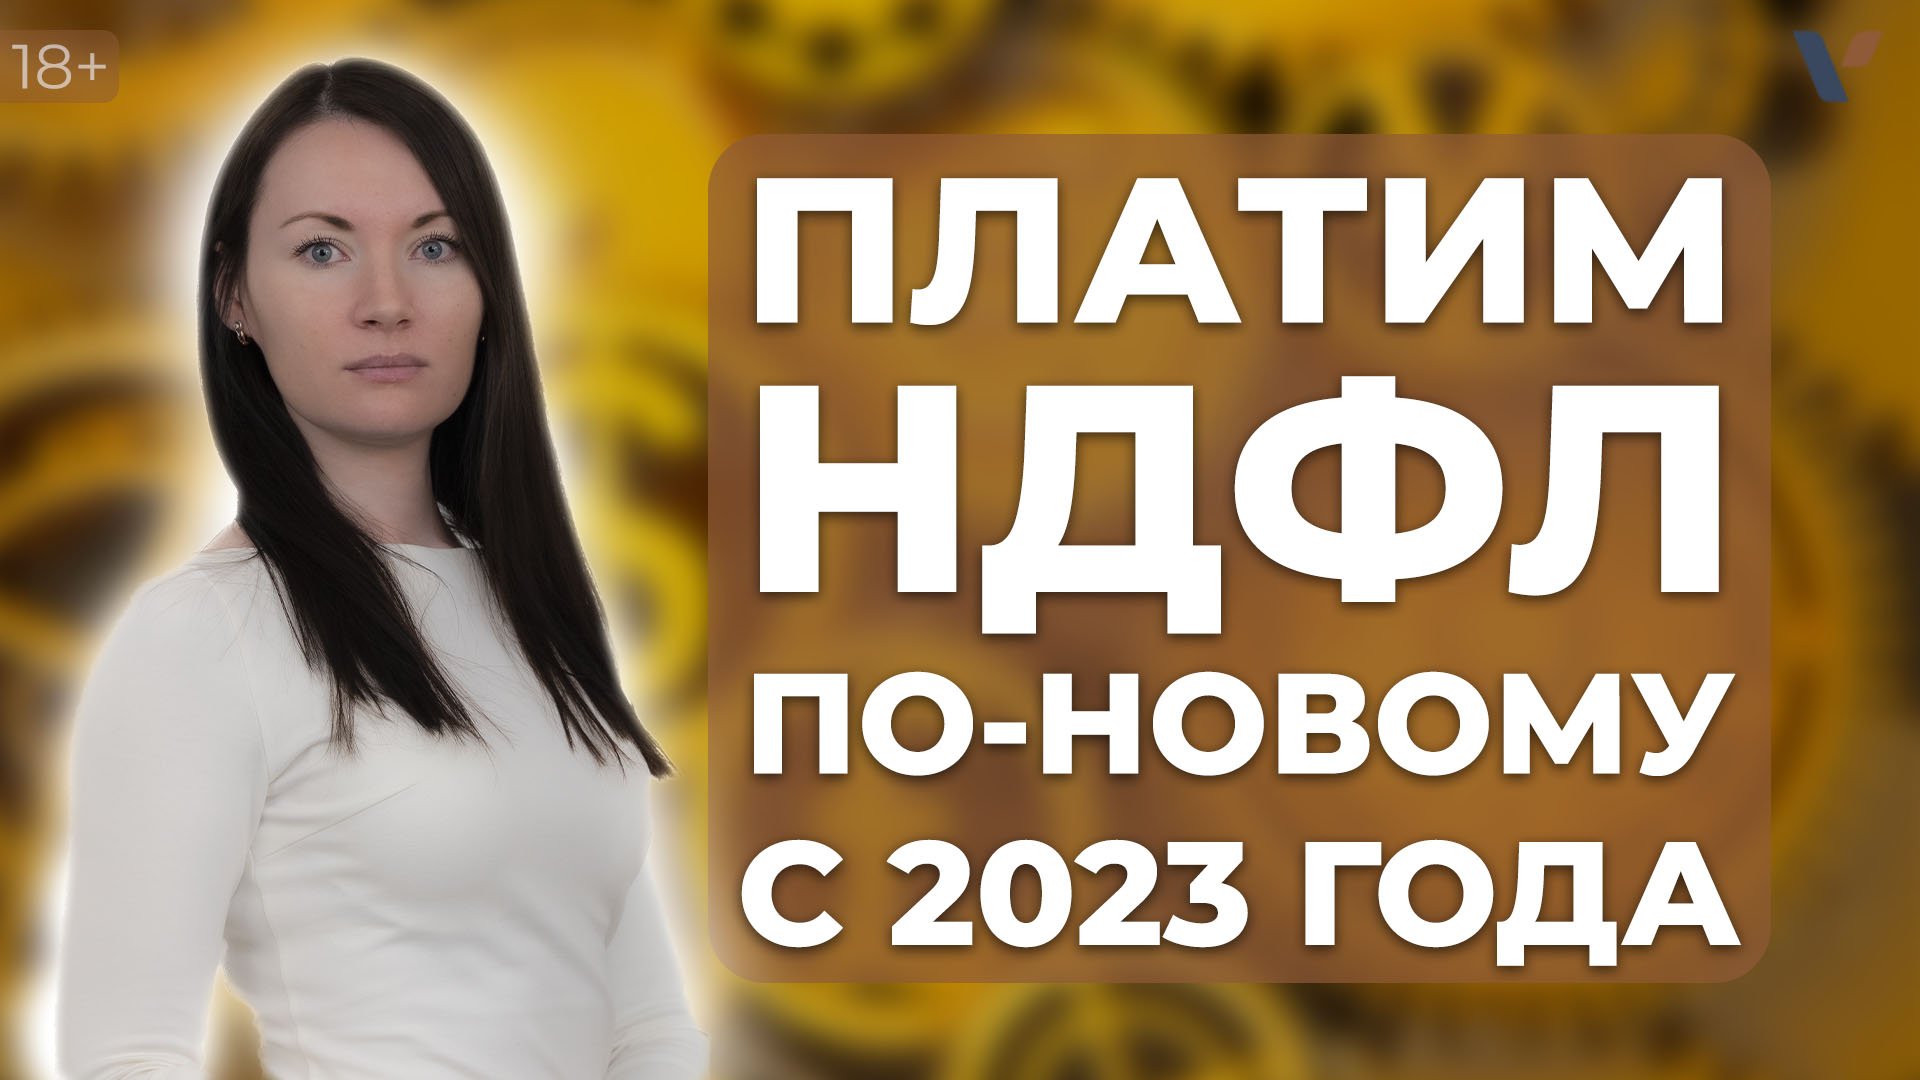 Видео Эротика 2023 Год Омск Смотреть Бесплатно